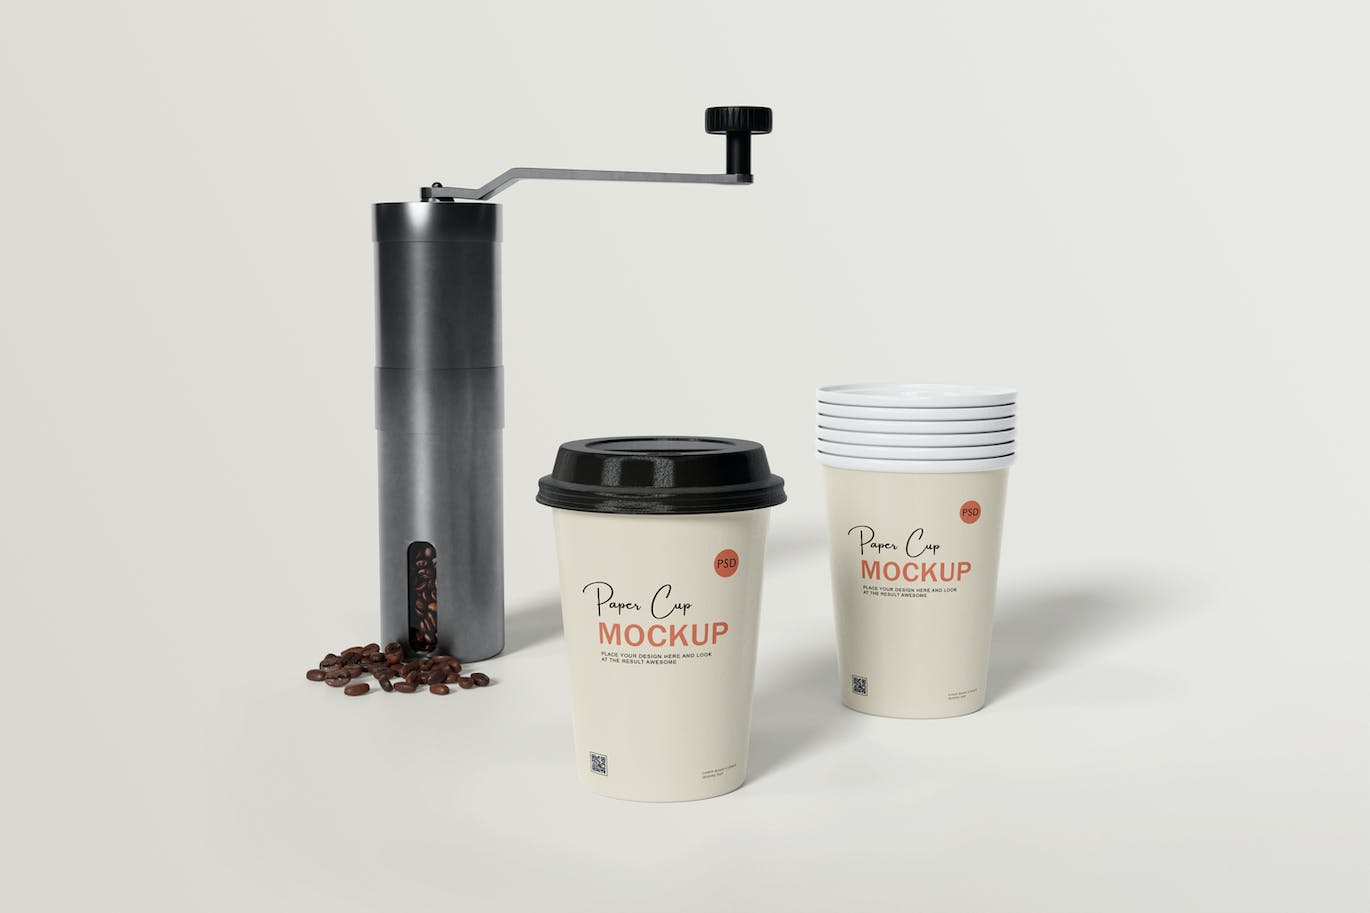 咖啡机咖啡杯包装设计样机 Coffee cup mockup with coffee machine 样机素材 第5张